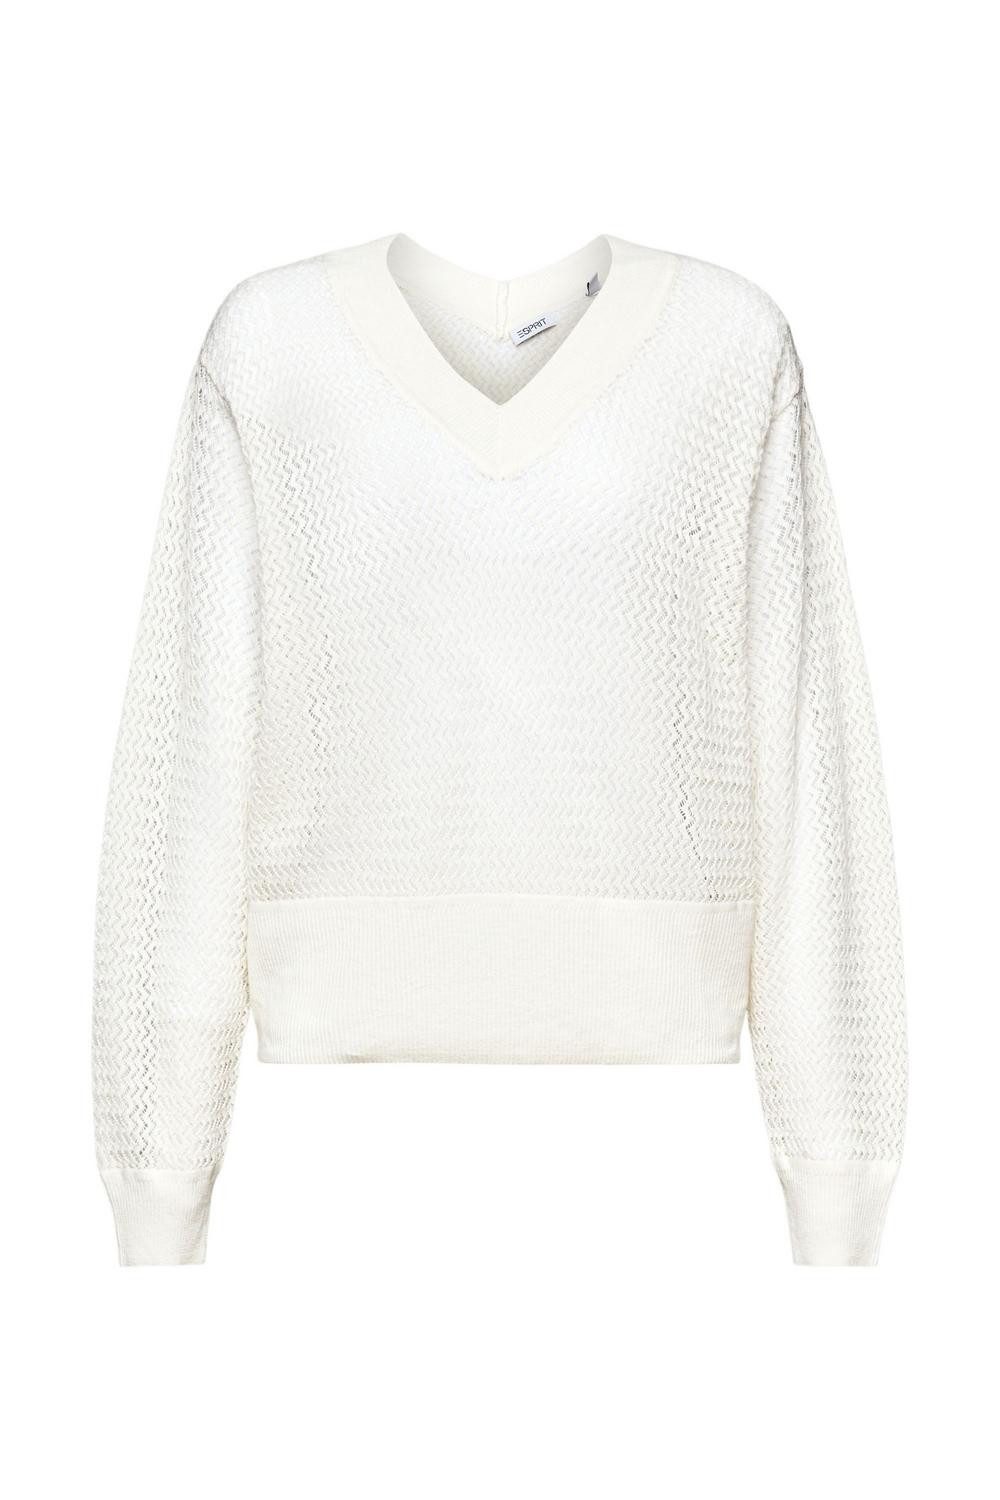 Esprit Sweatshirt structured v ne, OFF WHITE